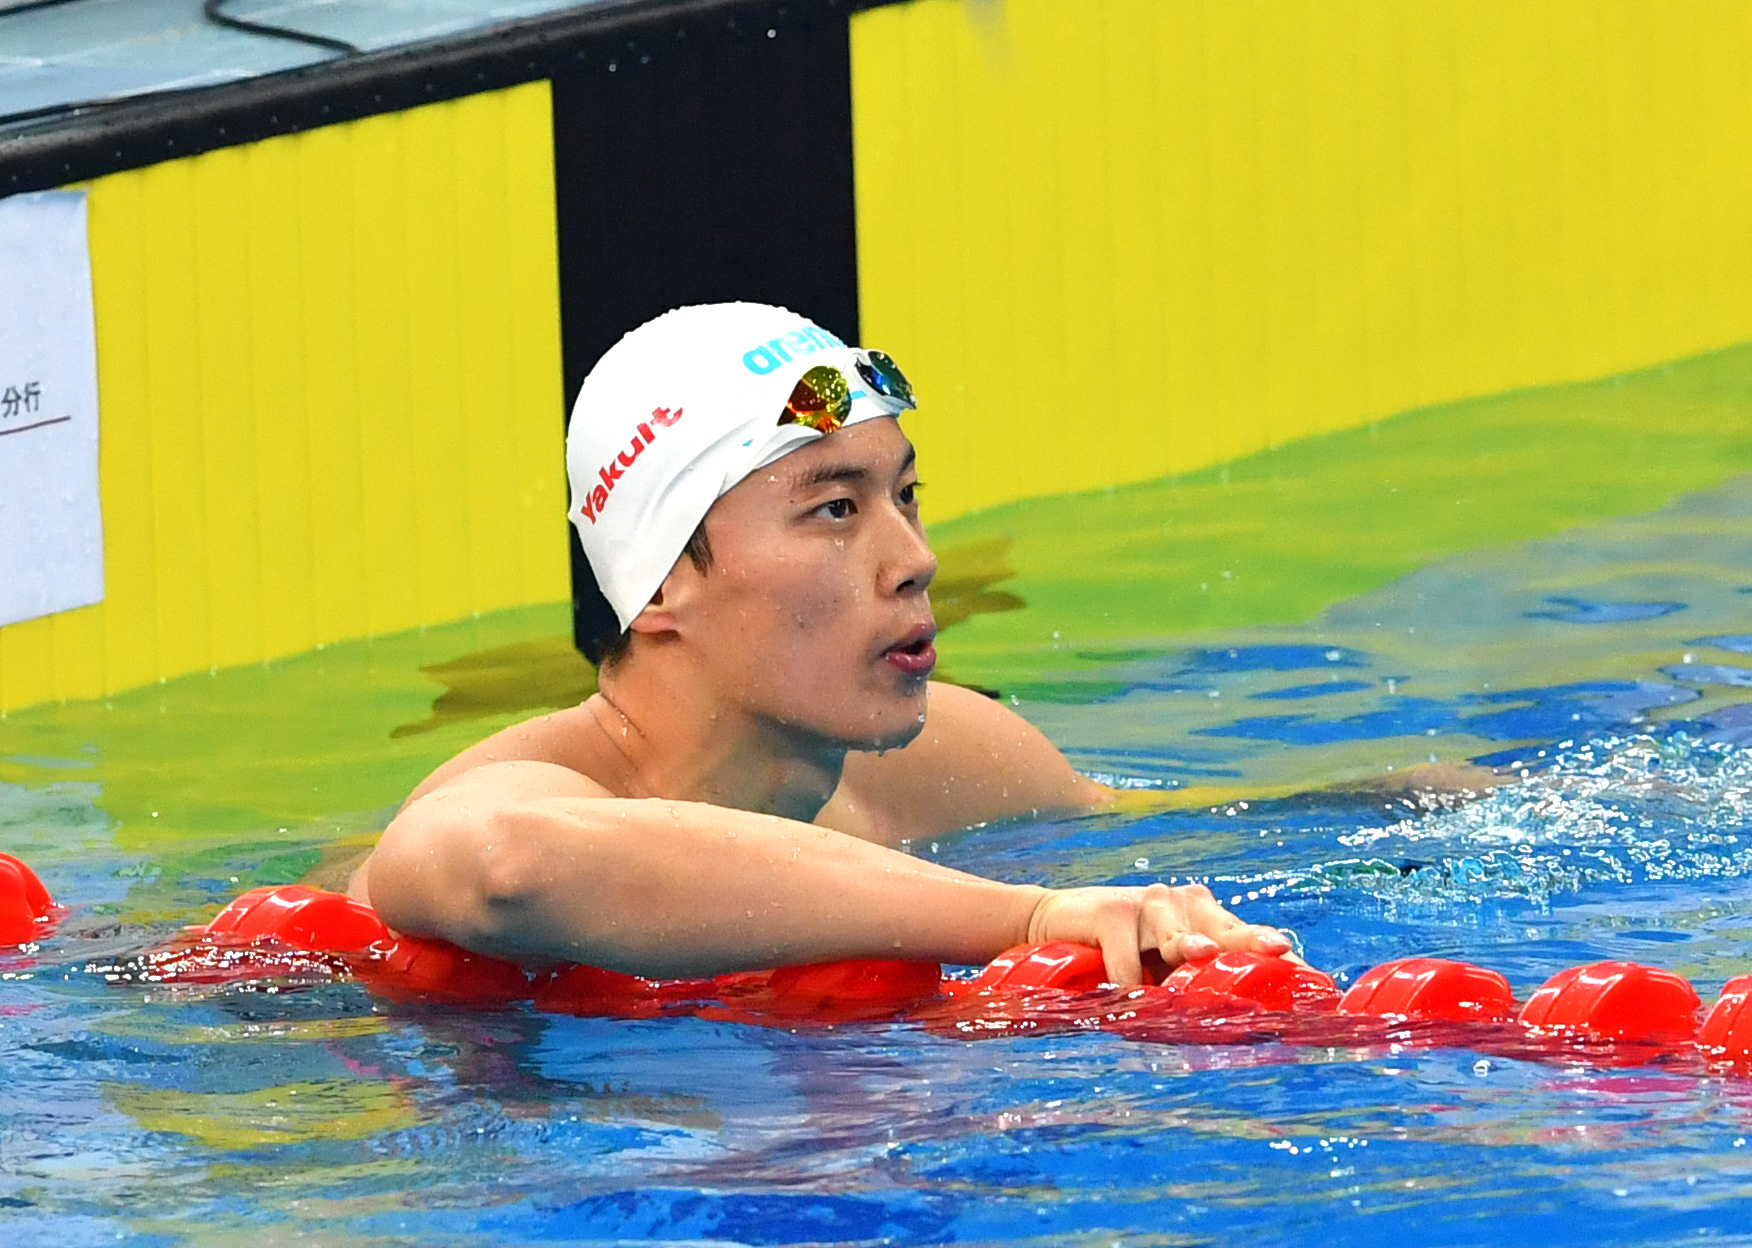 游泳——全国冠军赛:汪顺获男子200米个人混合泳冠军